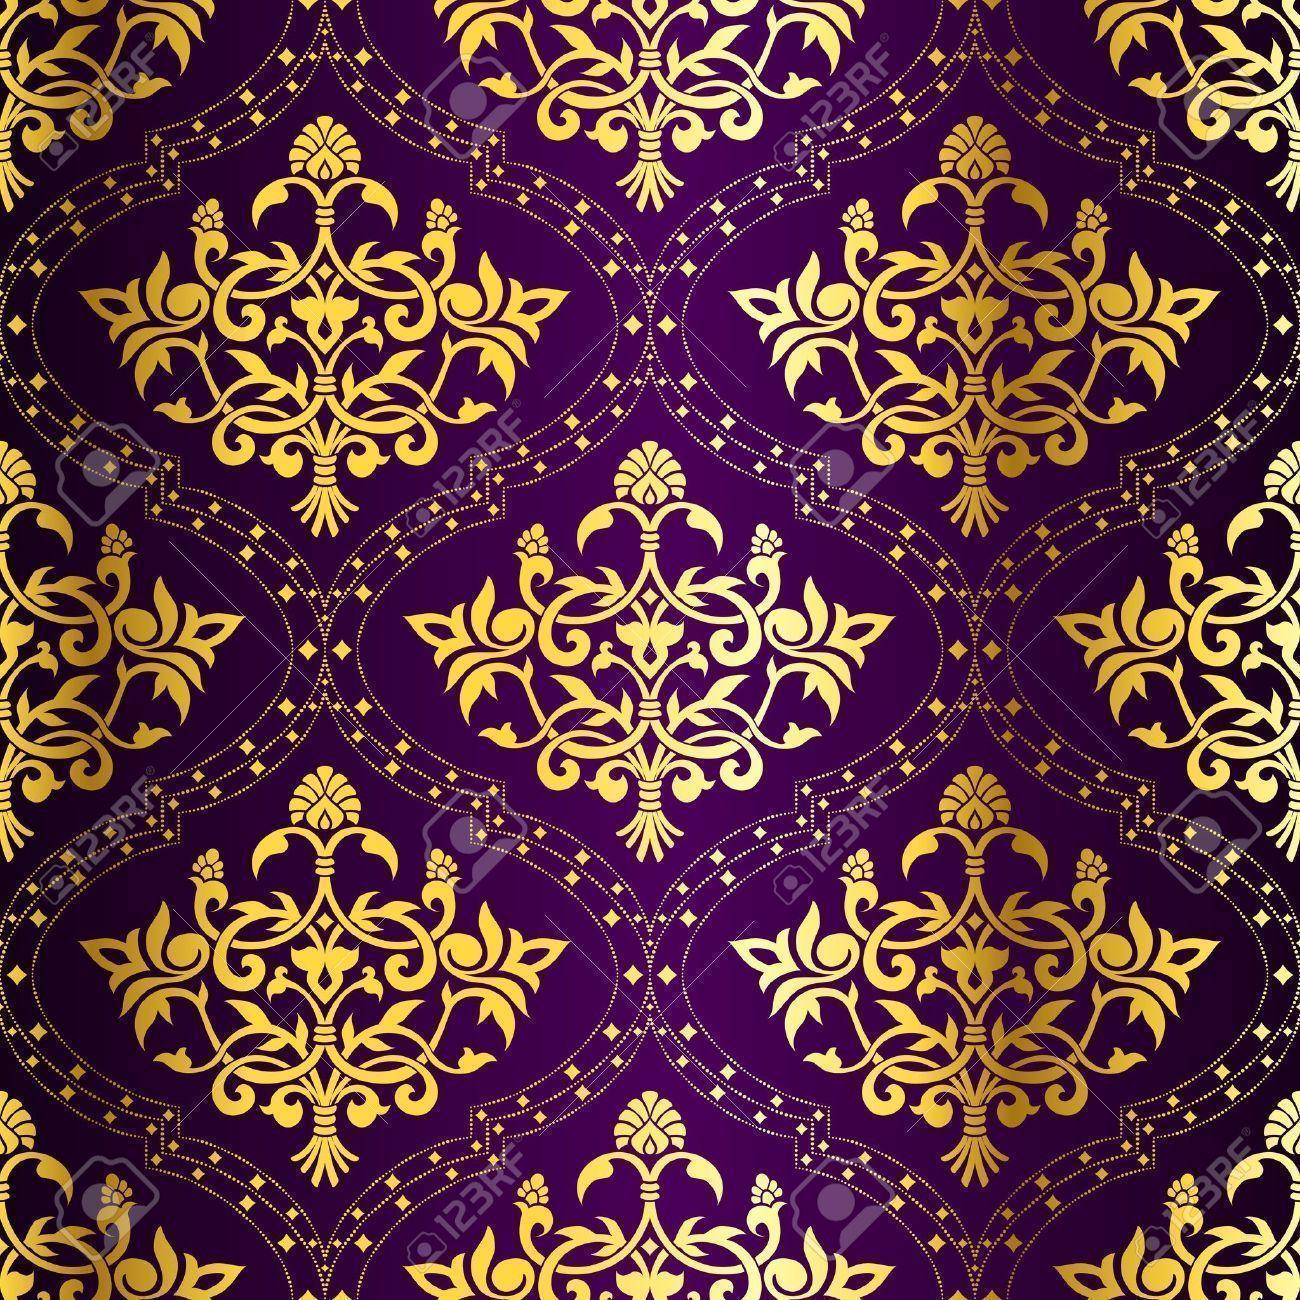 purple and gold chevron wallpaper